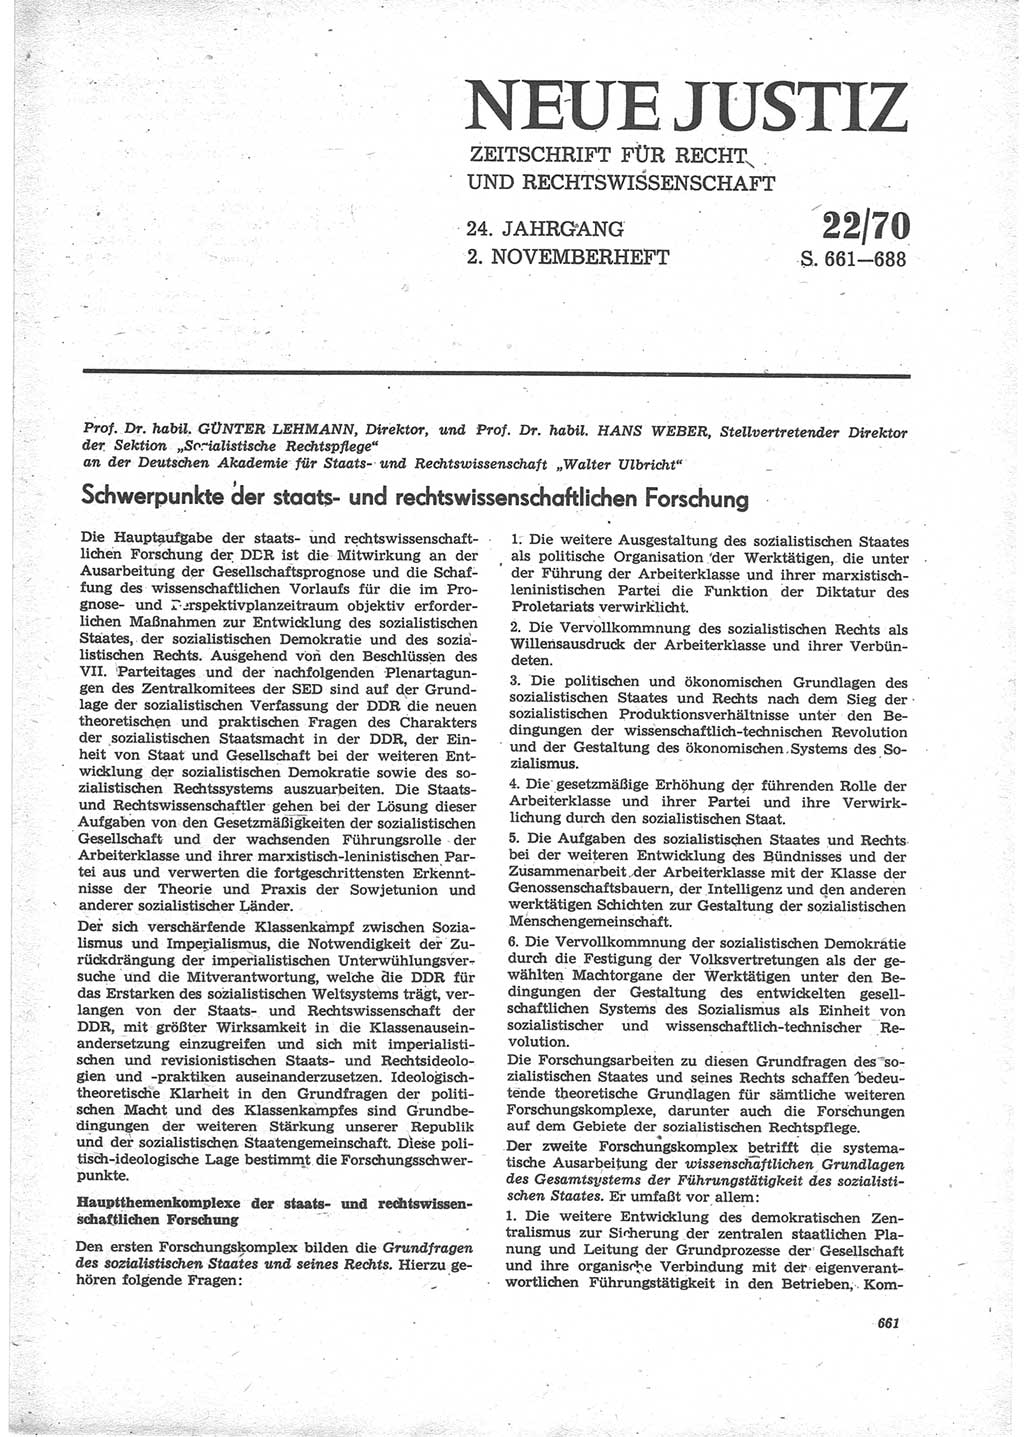 Neue Justiz (NJ), Zeitschrift für Recht und Rechtswissenschaft [Deutsche Demokratische Republik (DDR)], 24. Jahrgang 1970, Seite 661 (NJ DDR 1970, S. 661)